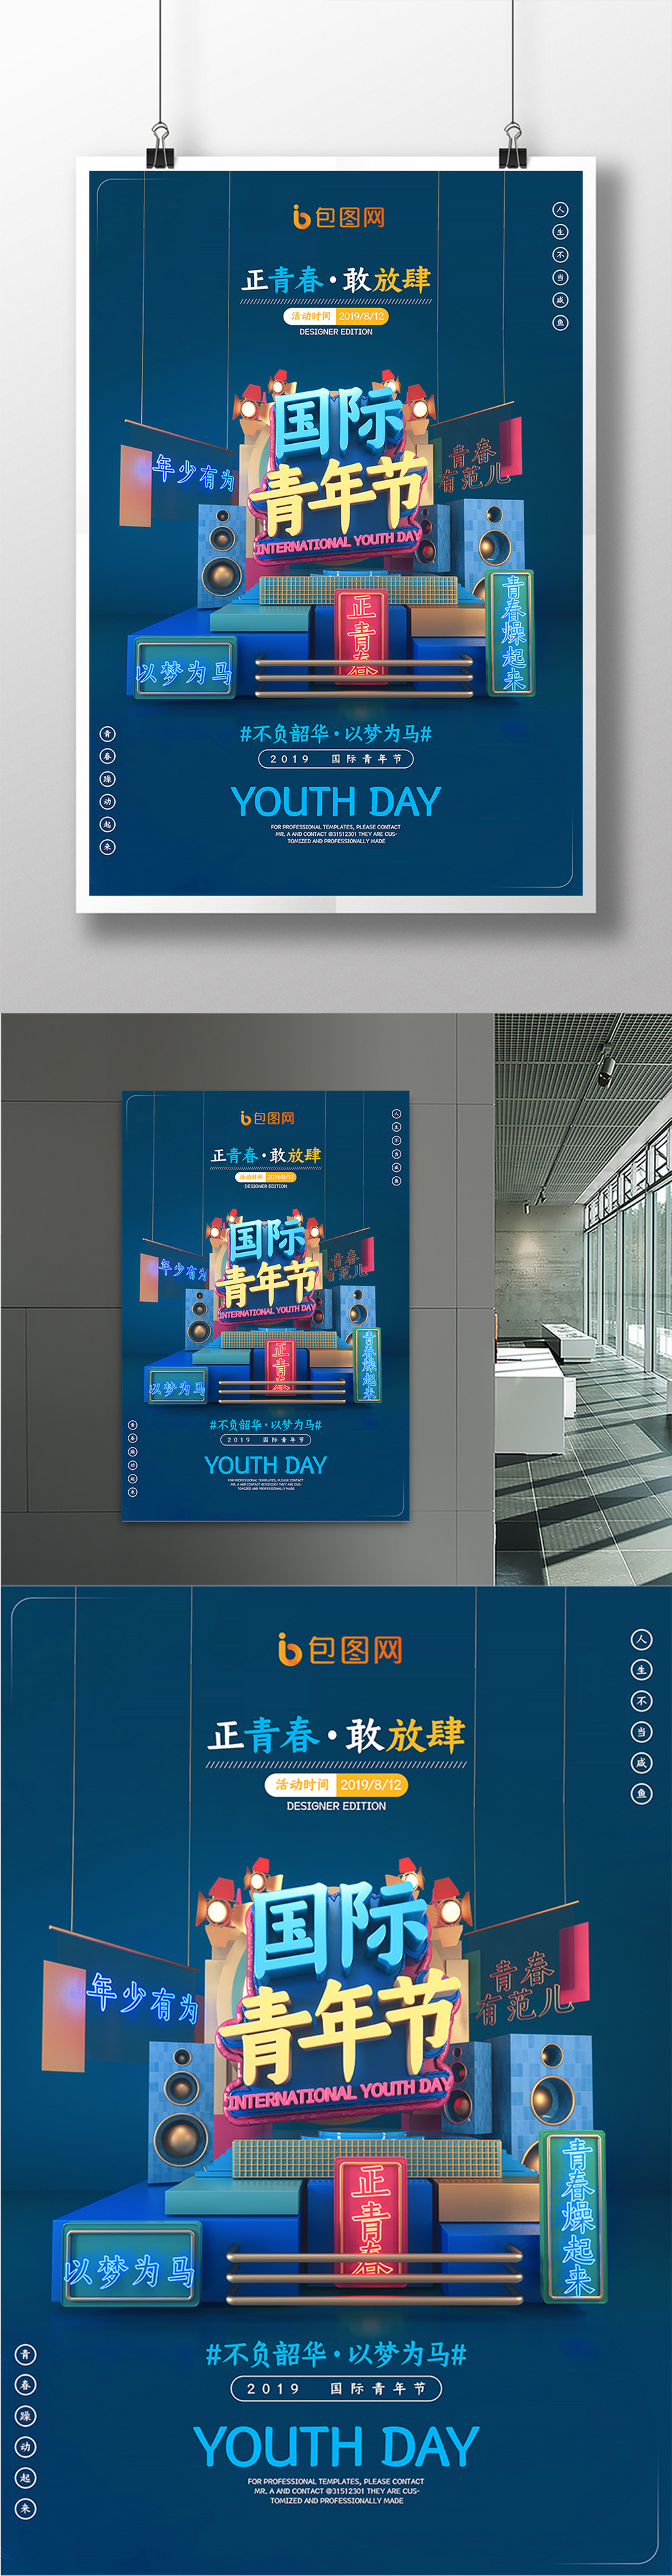 C4D蓝色立体简约大气国际青年节宣传海报